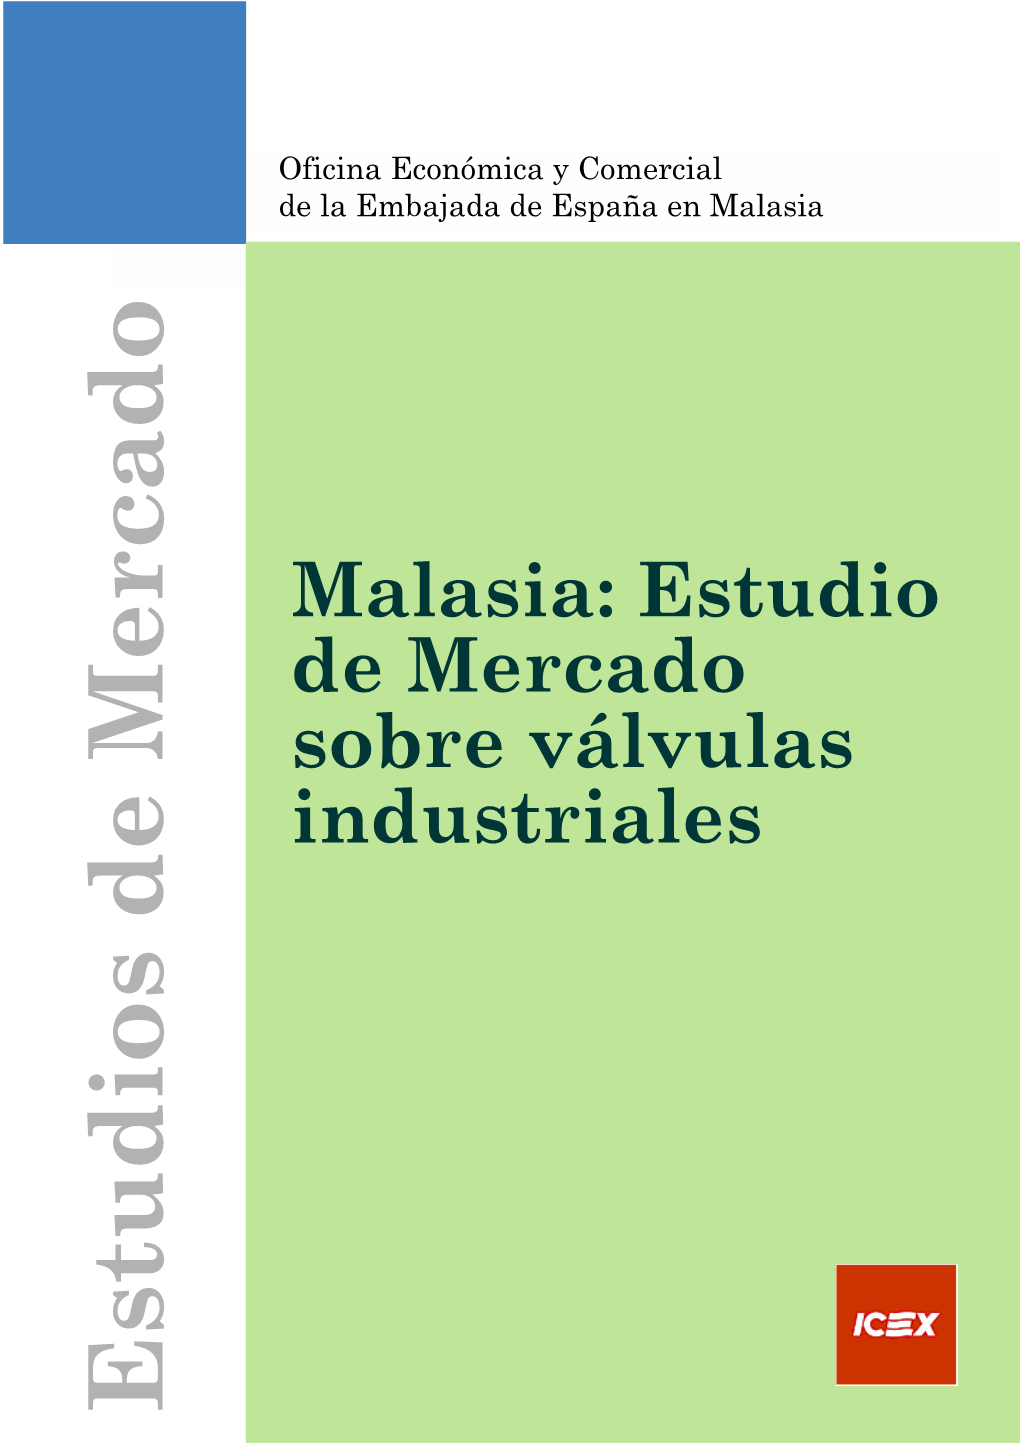 Estudios De Mercado De Laembajadaespañaenmalasia Oficina Económicaycomercial Industriales Sobre Válvulas De Mercado Malasia: Estudio